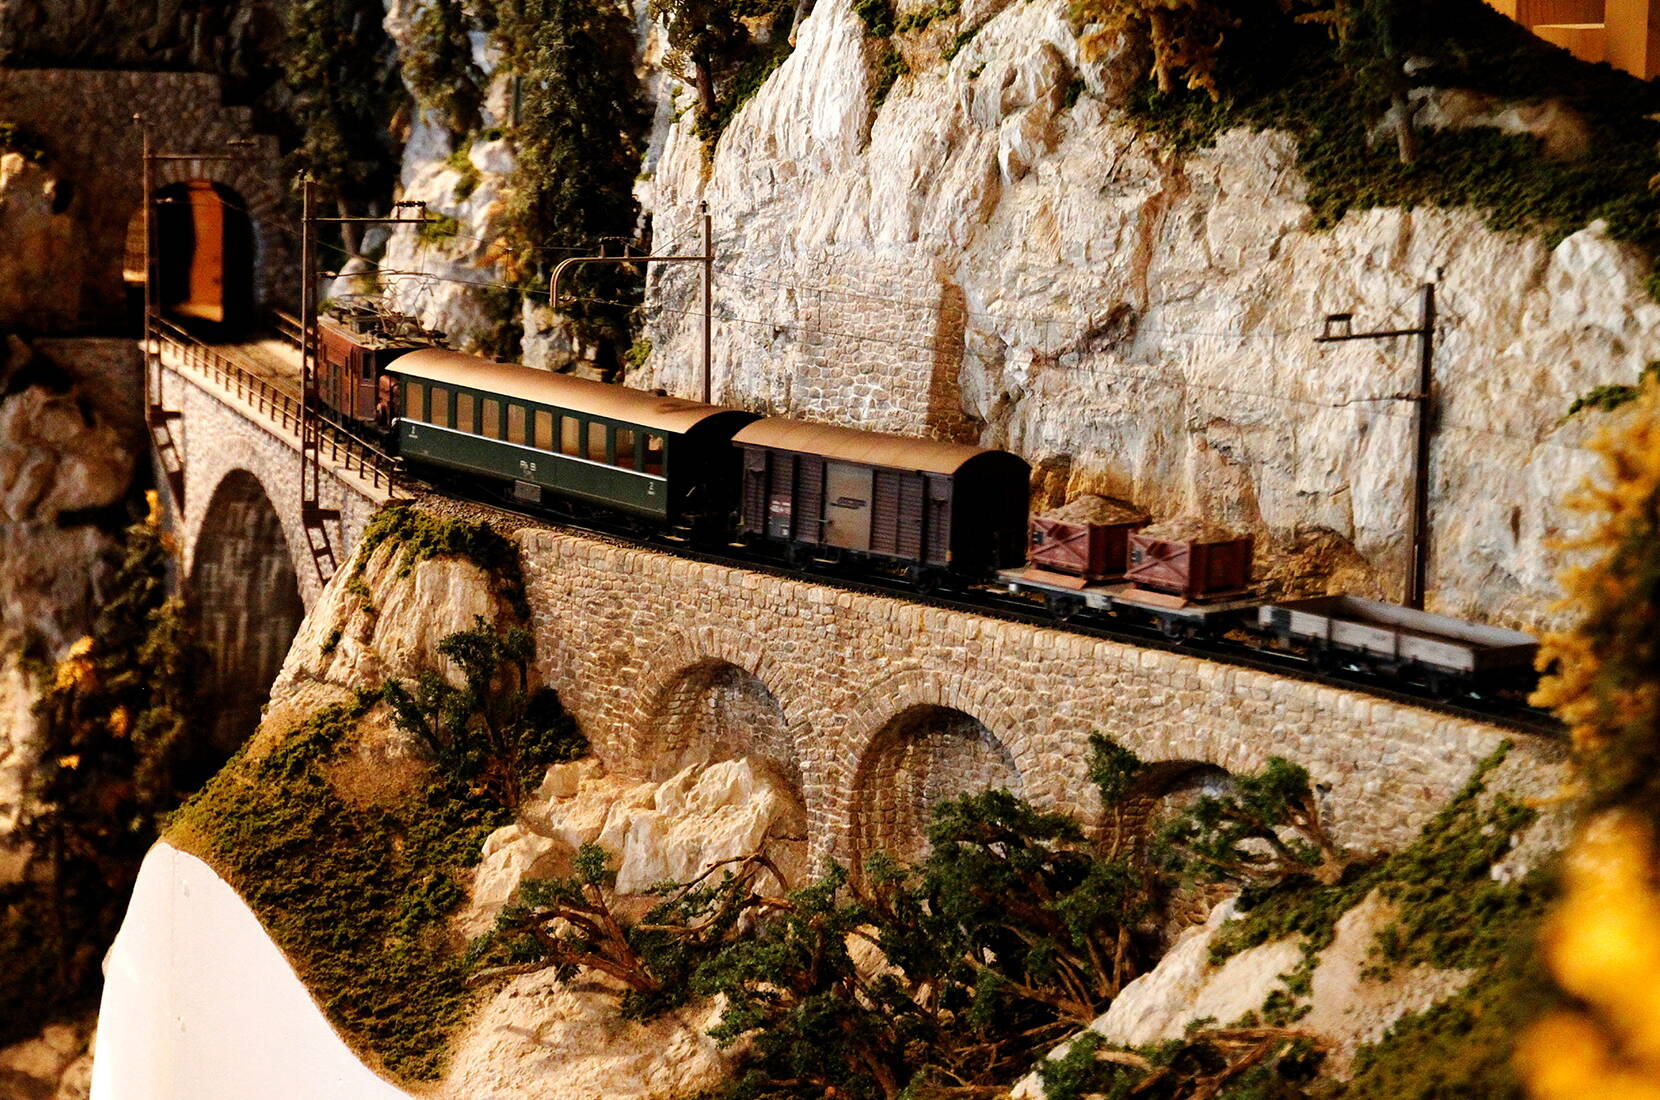 Familienausflug Bahnmuseum Albula. Auf 1'300 m2 Ausstellungsfläche wandelt der Besucher durch Täler und Tunnel, erfährt Wissenswertes zu den Pioniertaten rund um den Bau der Strecke und wird mittels Lichtinszenierungen, historischen Filmen und Fotos in die Vergangenheit entführt.